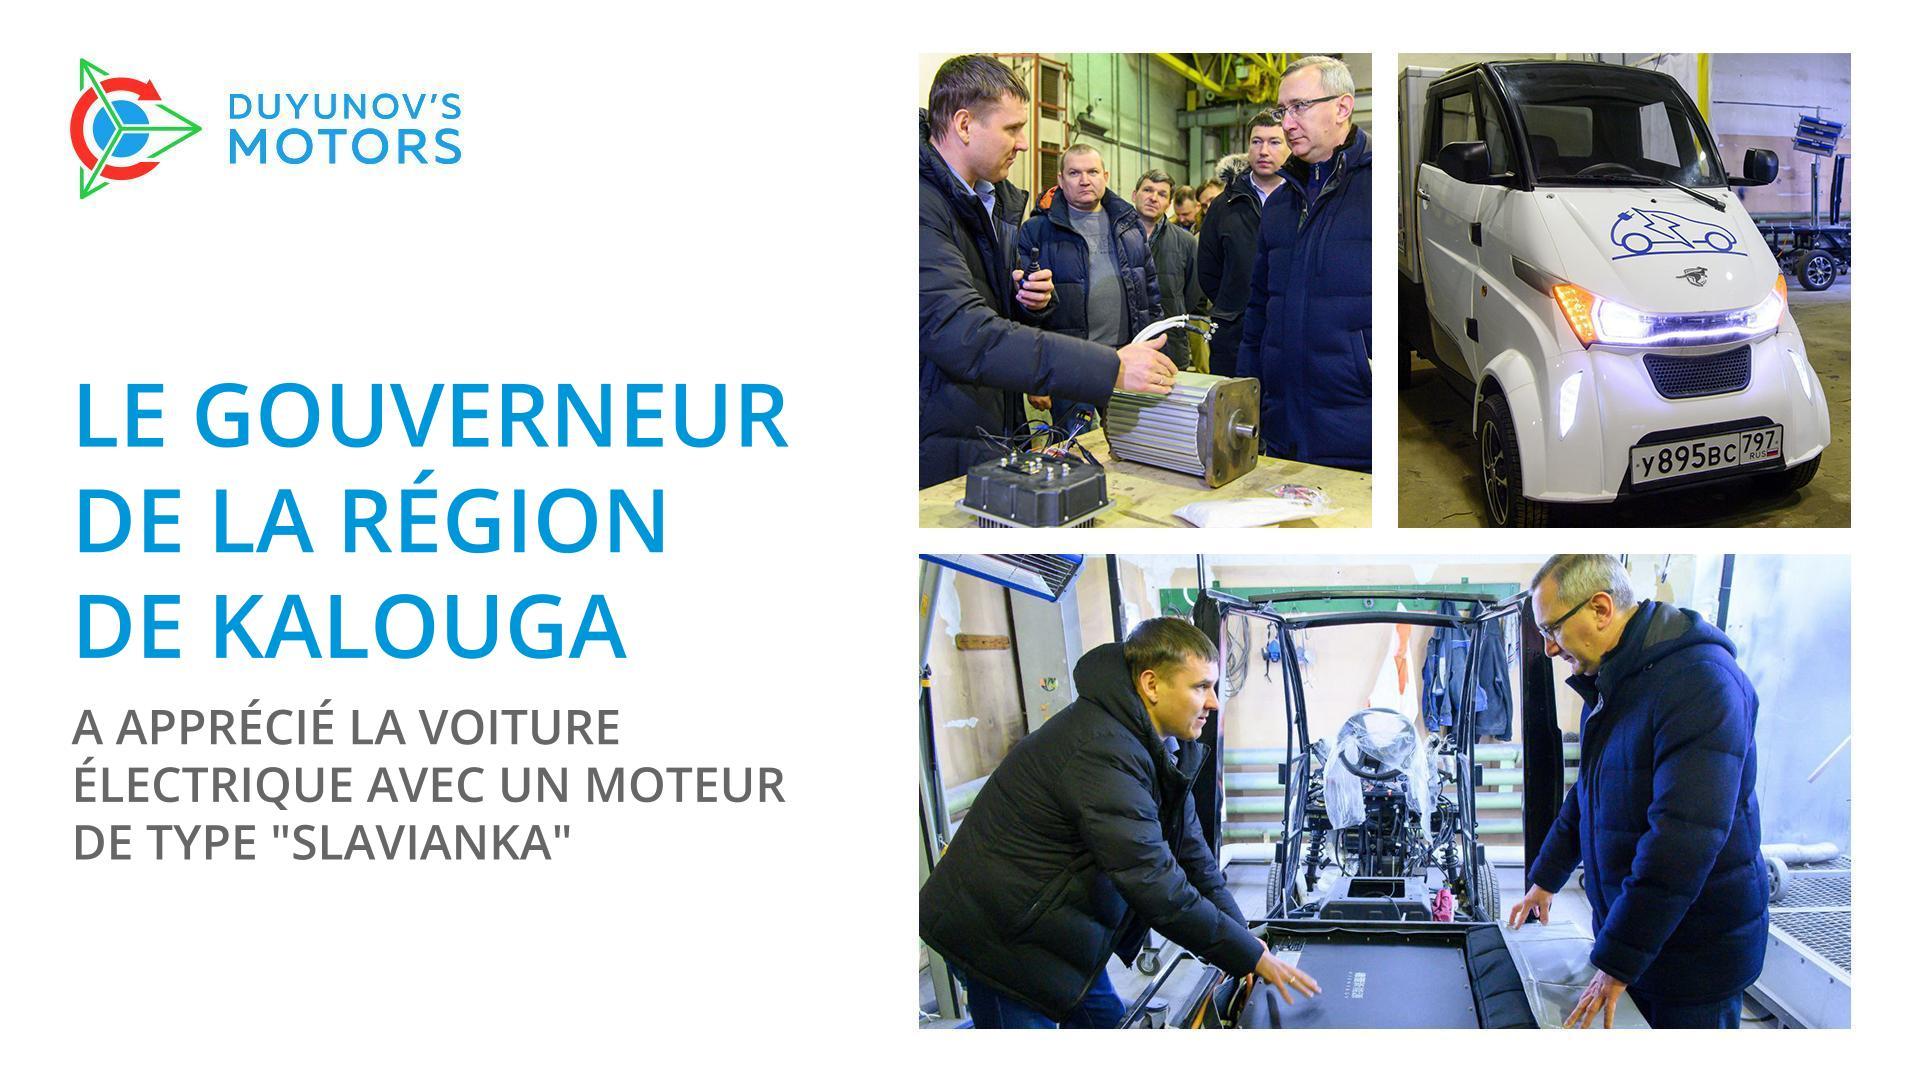 Le gouverneur de la région de Kalouga a apprécié la voiture électrique avec un moteur de type "Slavianka"